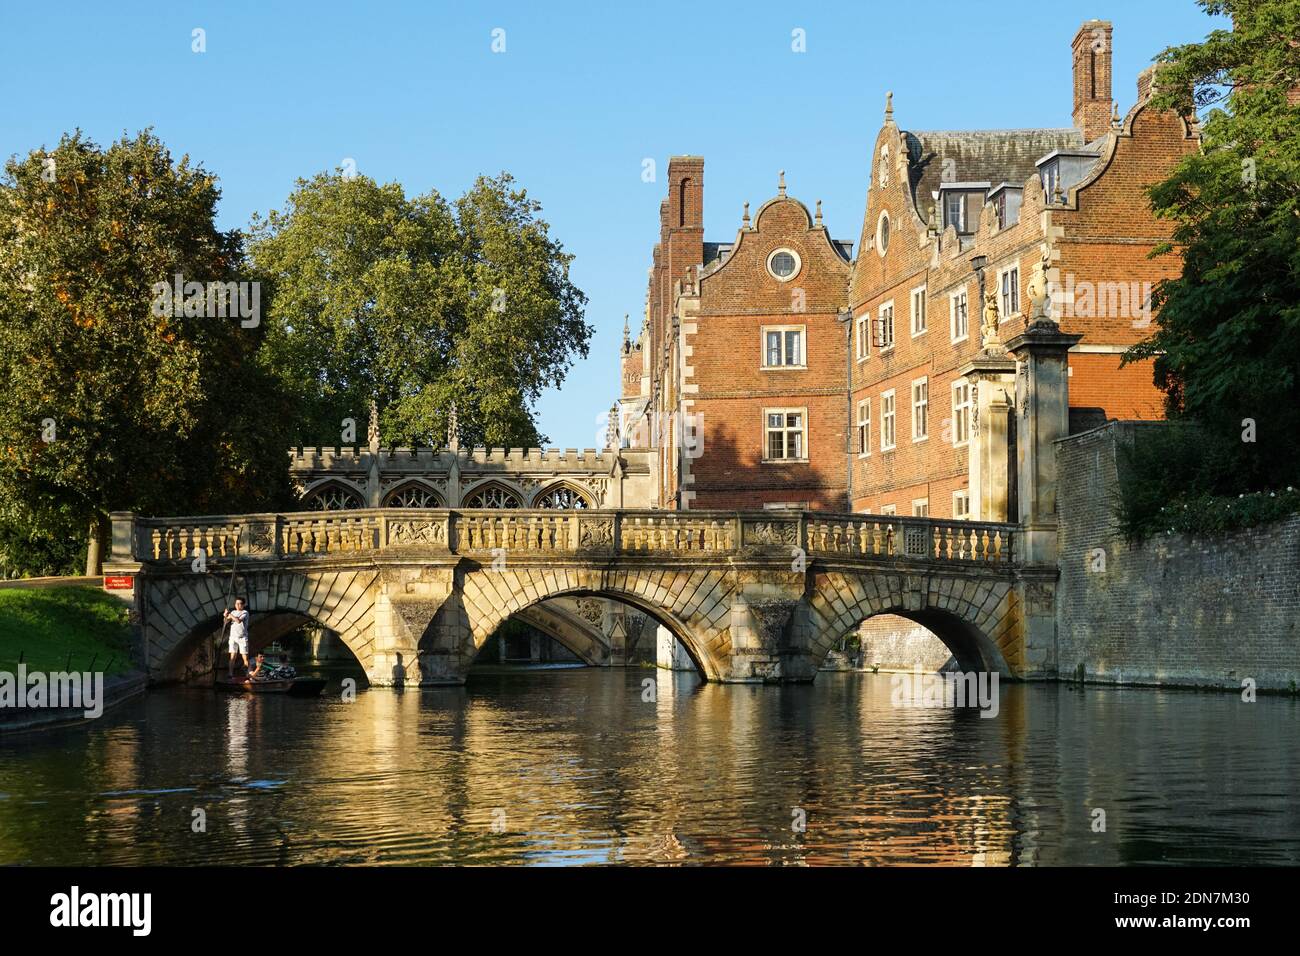 Le pont de la cuisine au-dessus de la rivière Cam à Cambridge, Cambridgeshire Angleterre Royaume-Uni Banque D'Images